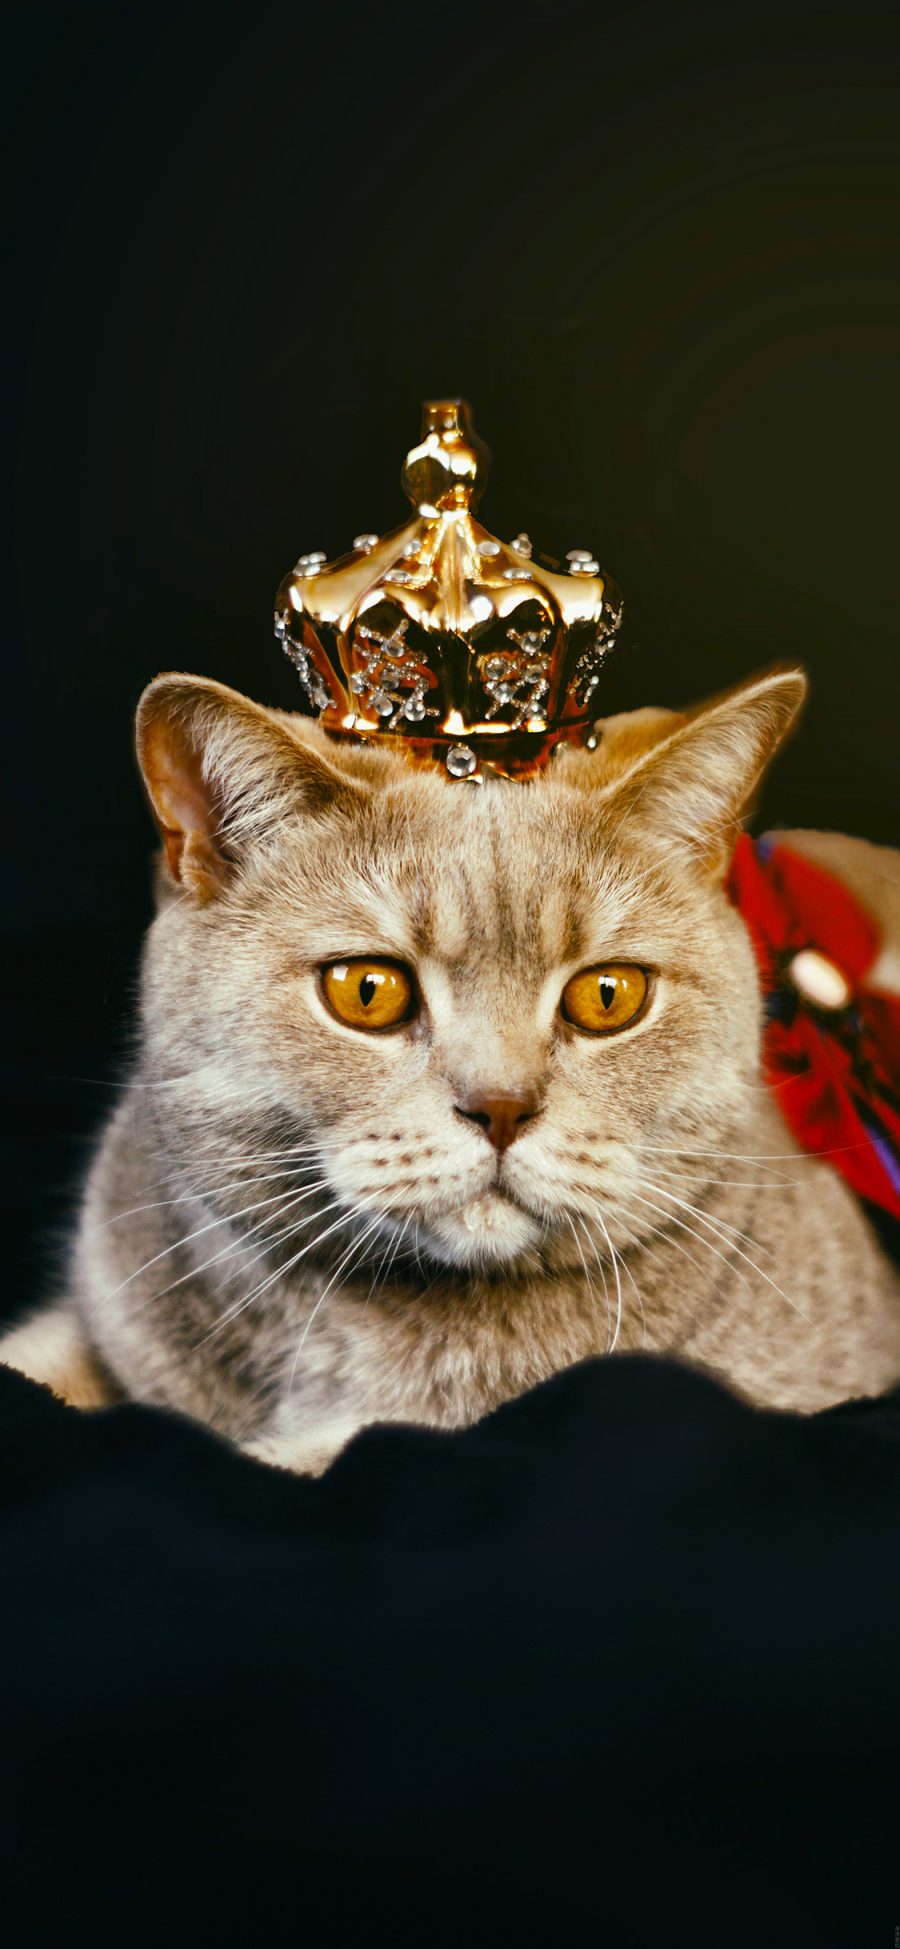 [2436×1125]猫咪 喵星人 皇冠 宠物 萌 苹果手机壁纸图片